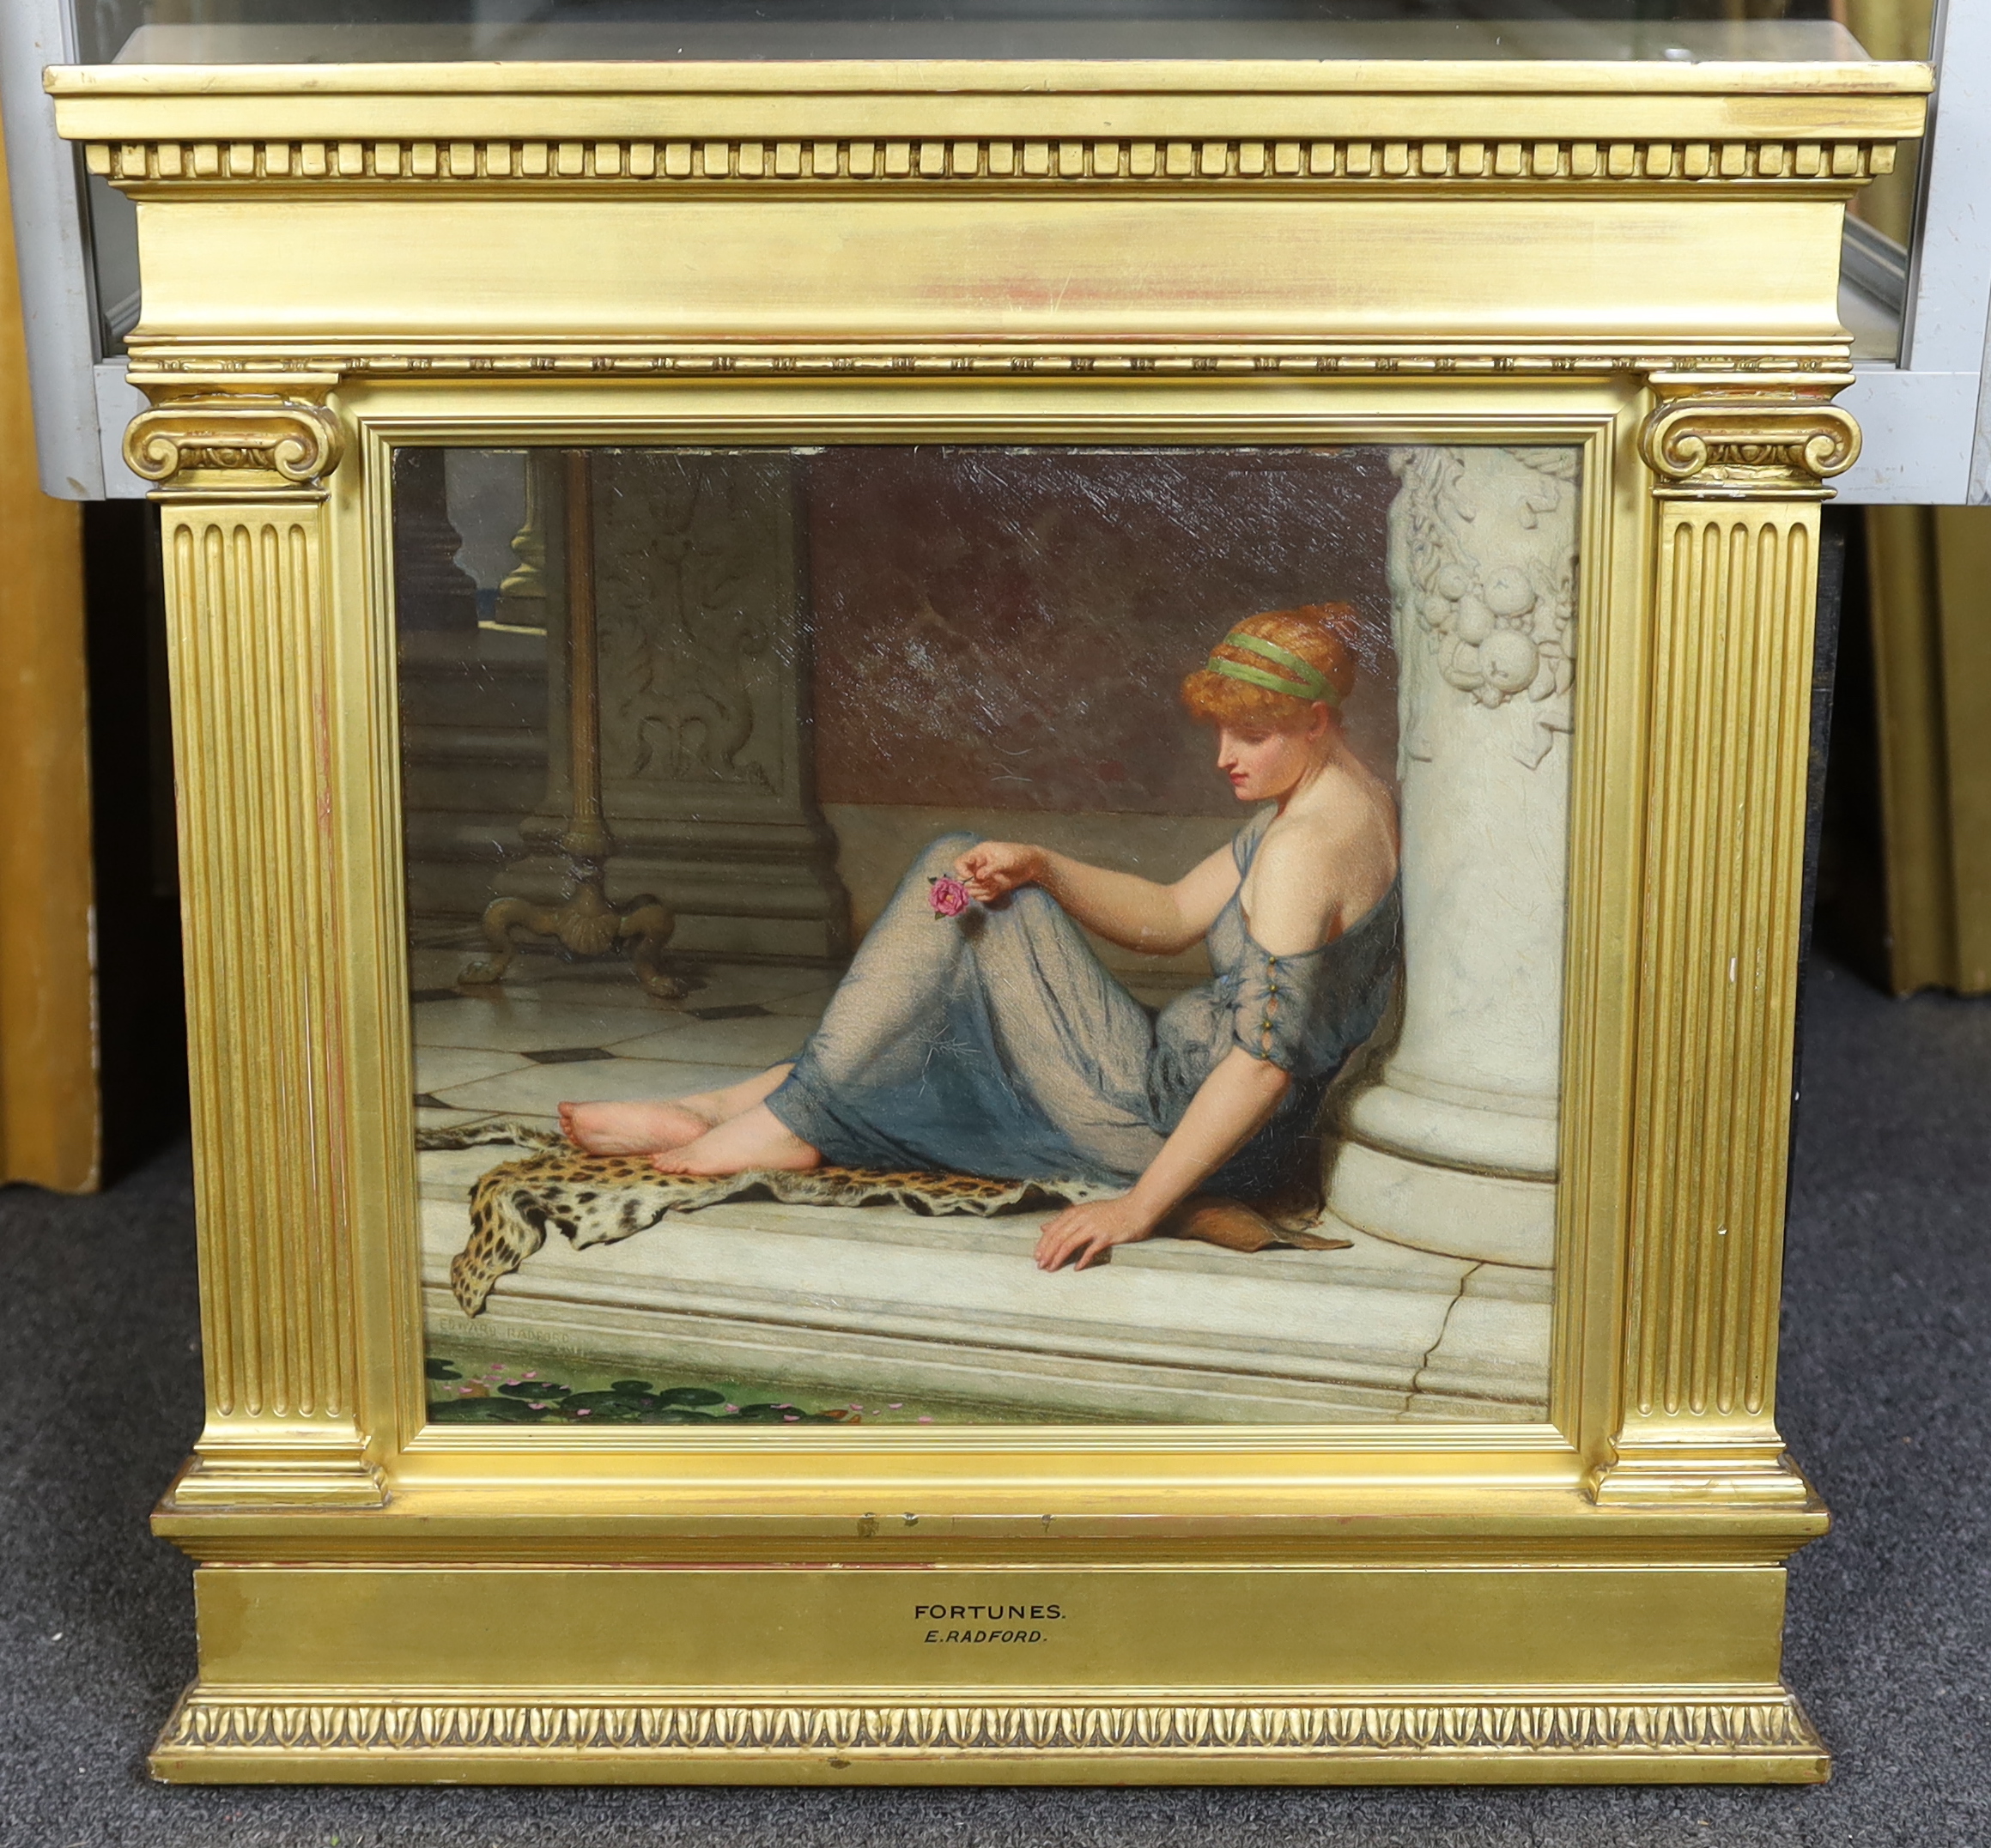 Edward Radford (English, 1831-1920), 'Fortunes', oil on canvas, 29 x 34cm